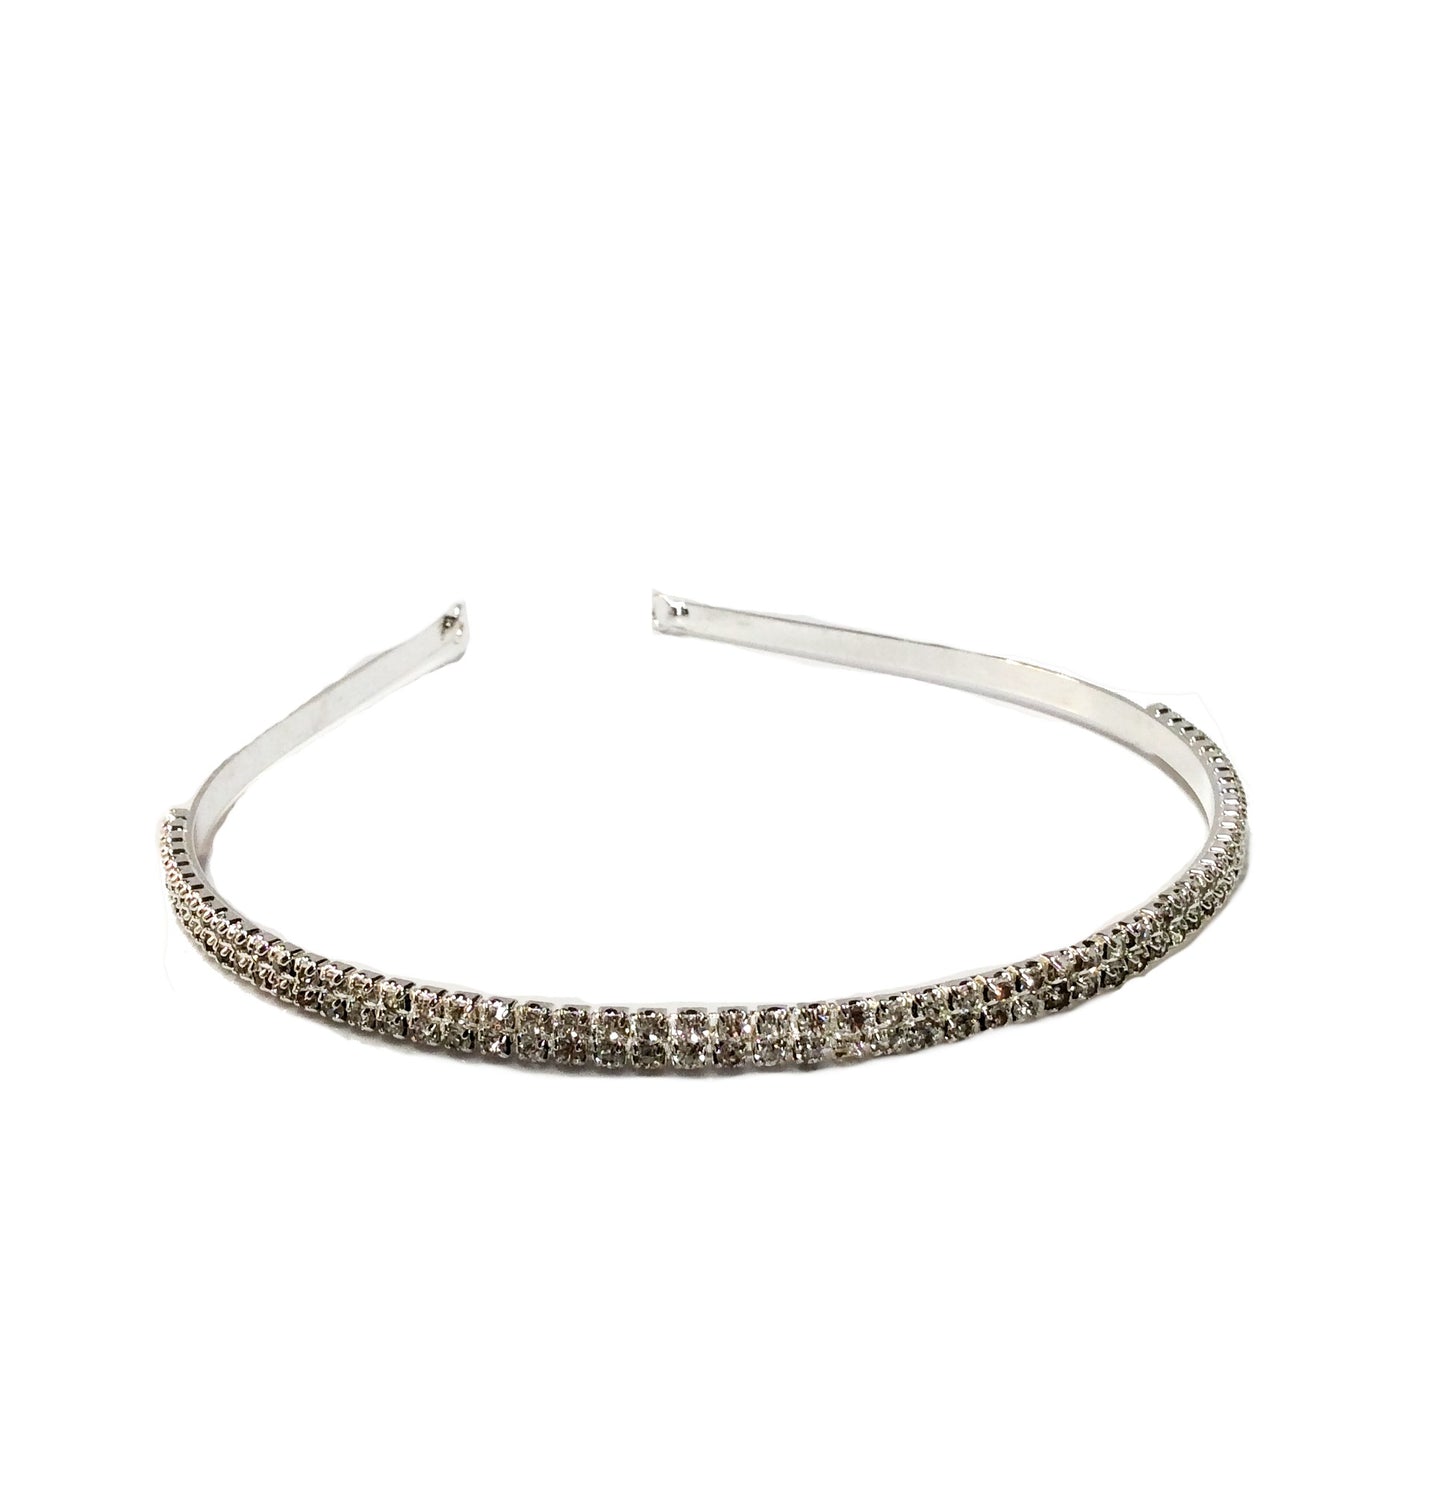 2-Row Crystal Headband (CLEAR) #76-6581CL